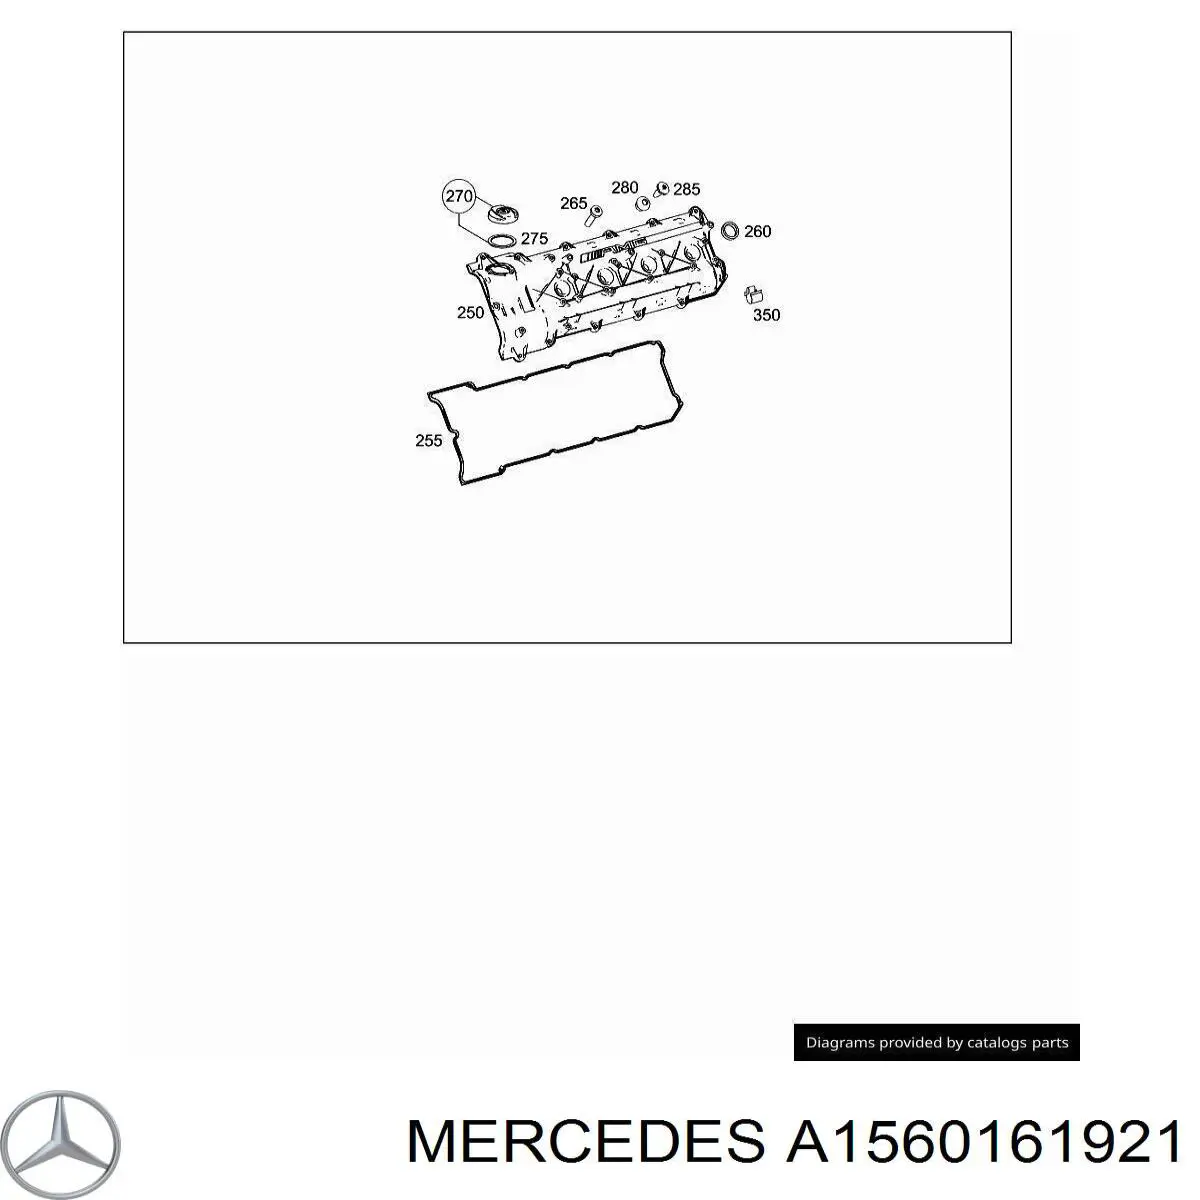 A1560161921 Mercedes прокладка клапанной крышки двигателя правая